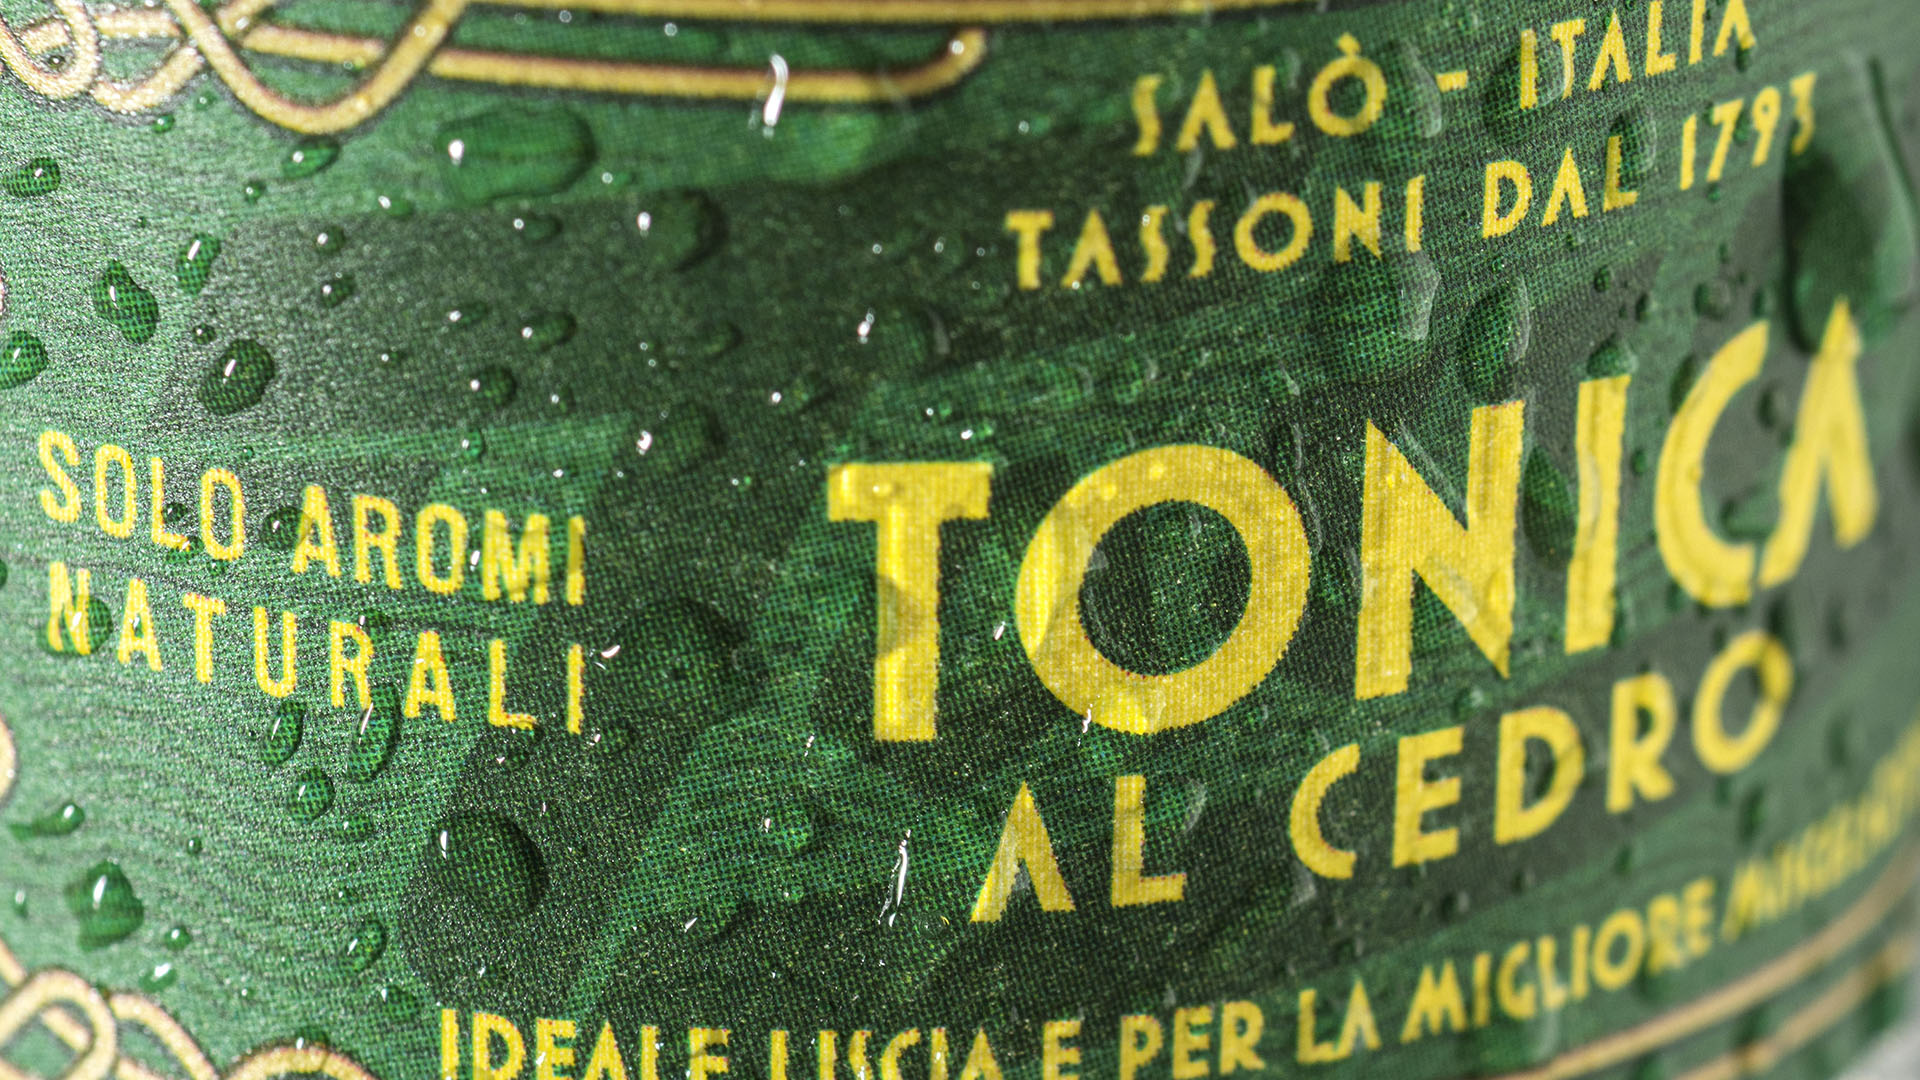 Tassoni_TonicaAlCedro-18cl_dettaglio-10